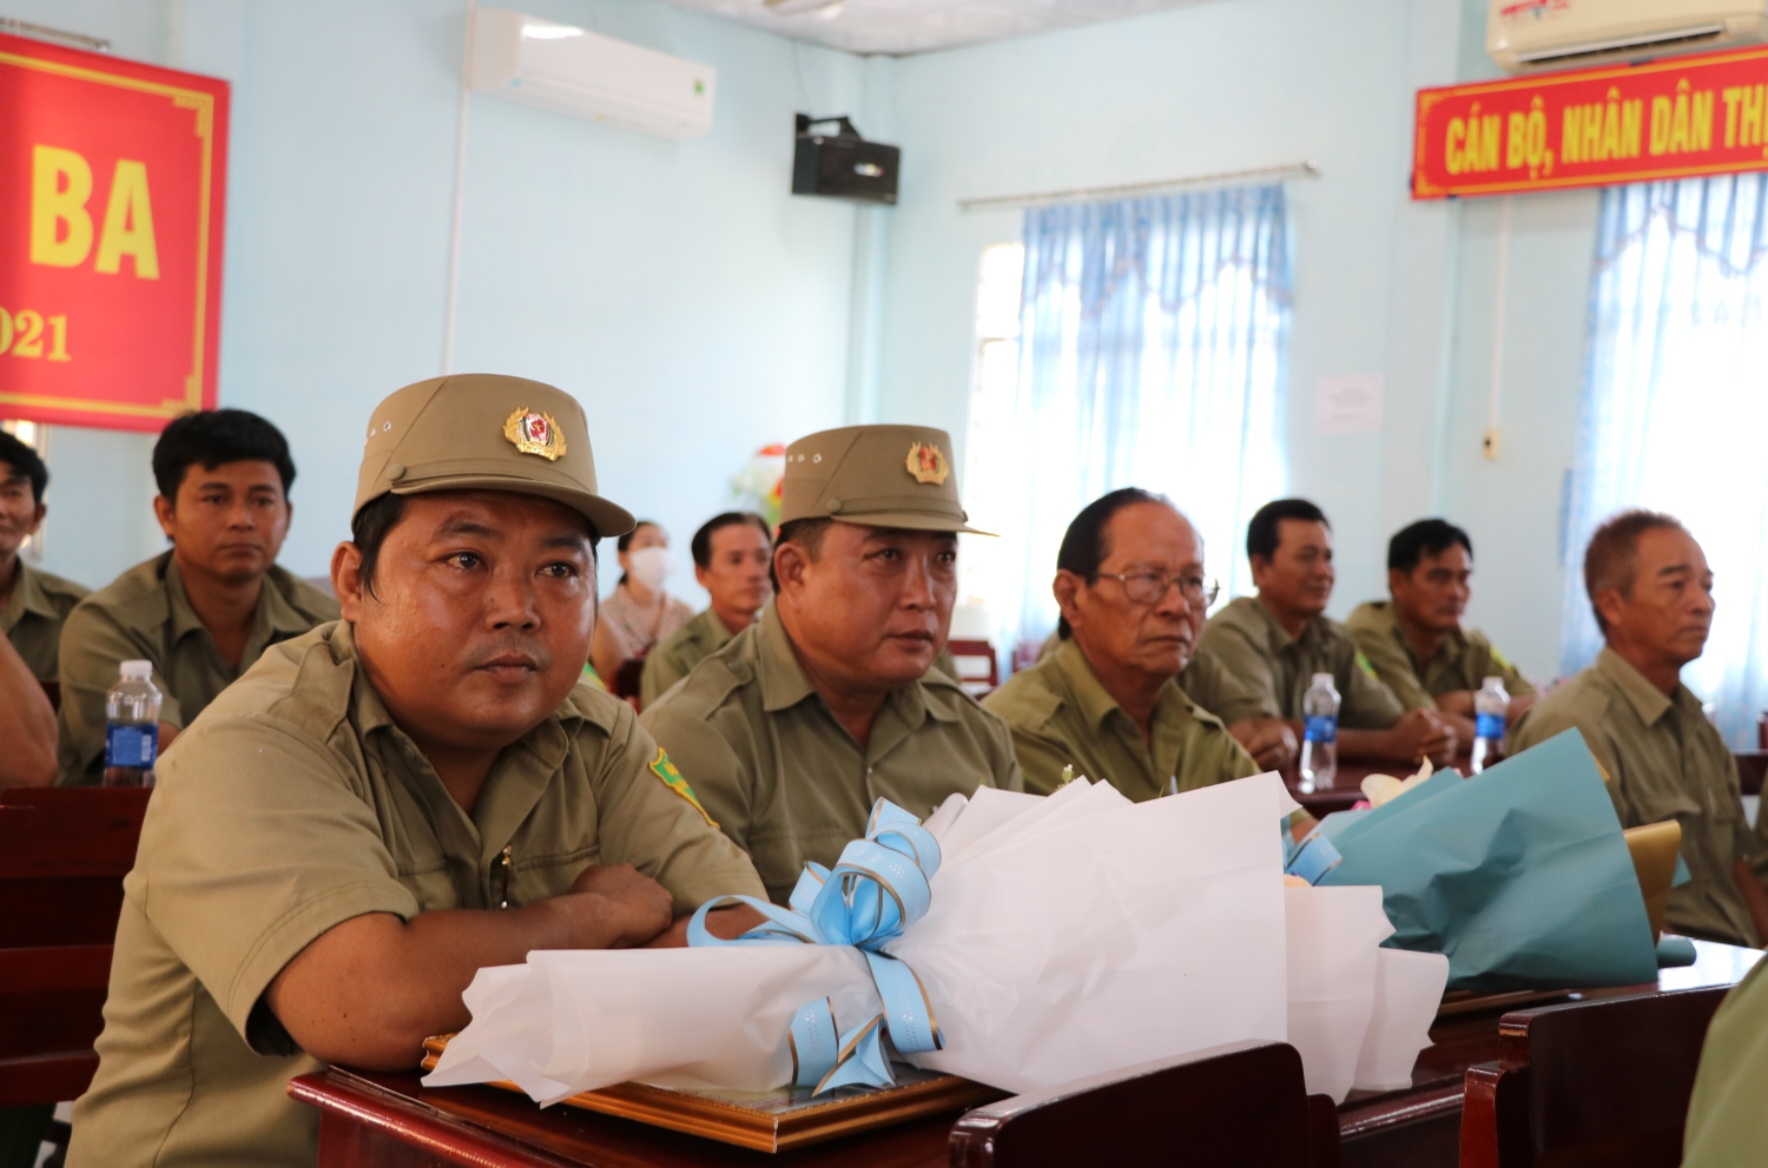 Dân sinh - Trao Bằng khen cho 2 cá nhân về thành tích trong đấu tranh PCTP